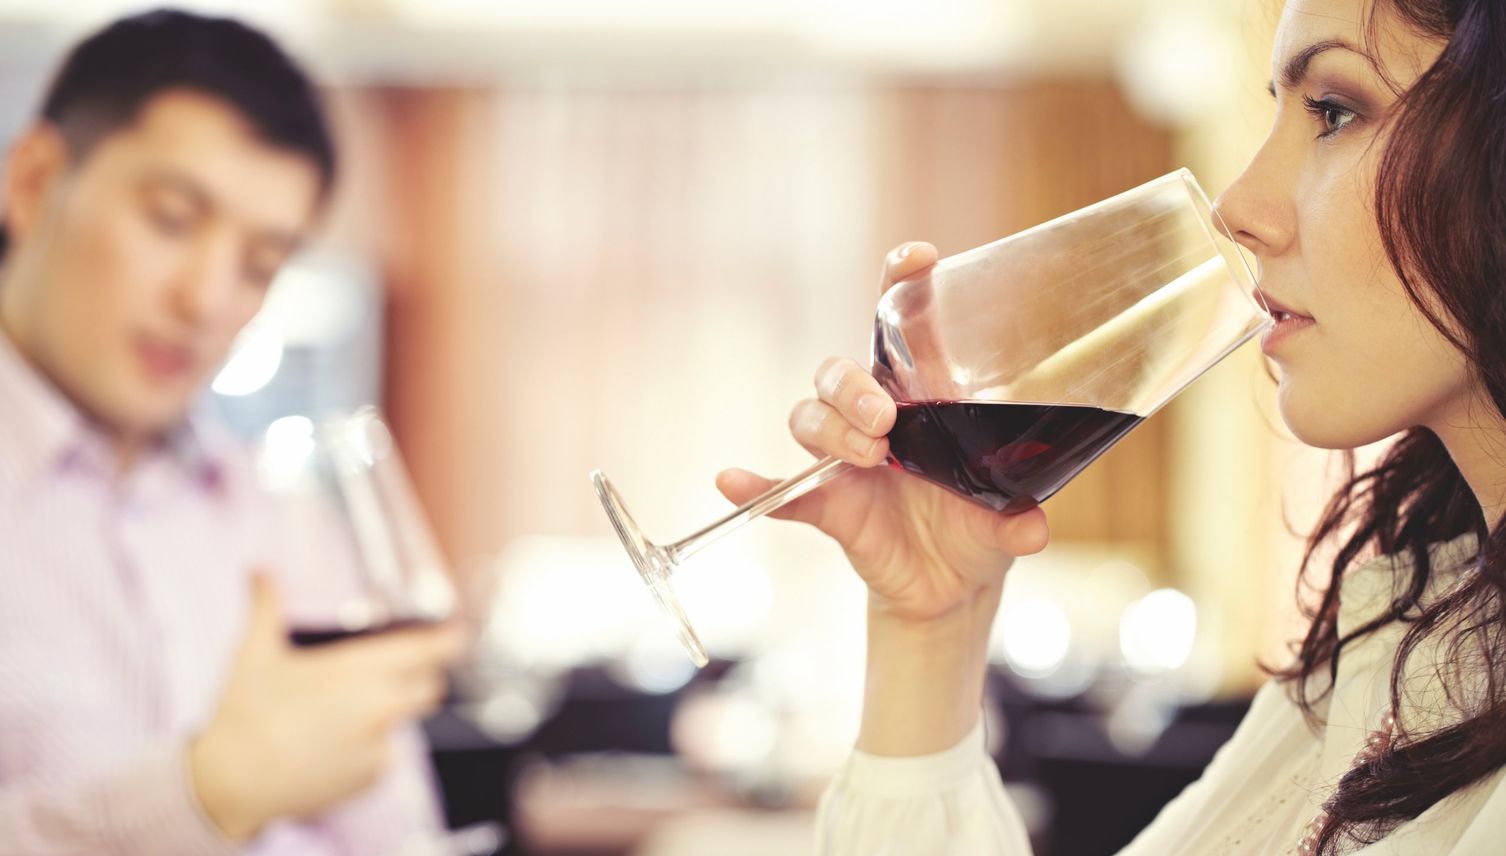 Kork, Kopfschmerzen und Weinstein: sechs Irrtümer zu Wein